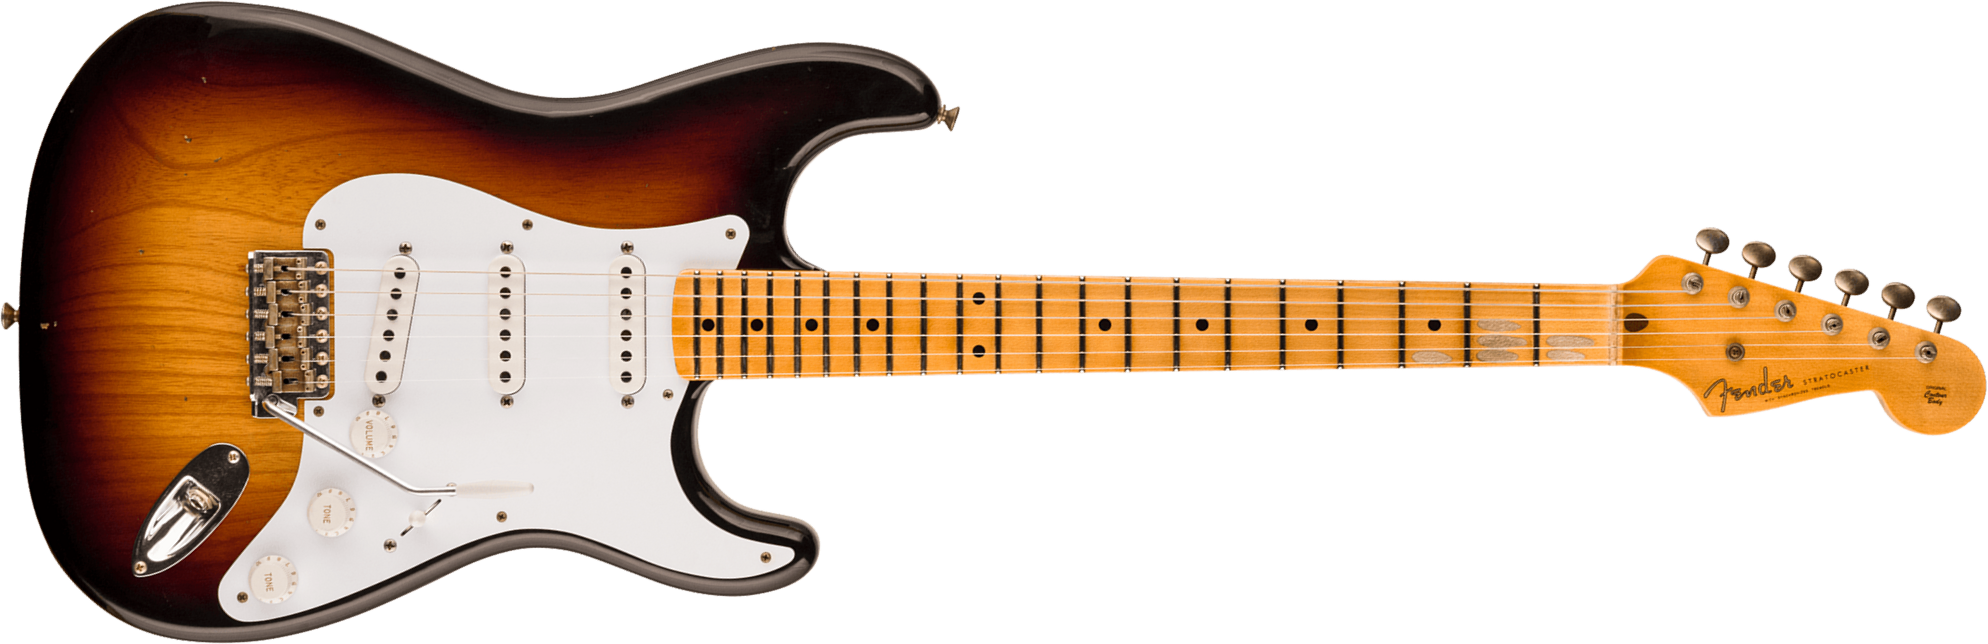 Fender Custom Shop Strat 1954 70th Anniv. 3s Trem Mn - Journeyman Relic Wide-fade 2-color Sunburst - Guitare Électrique Forme Str - Main picture